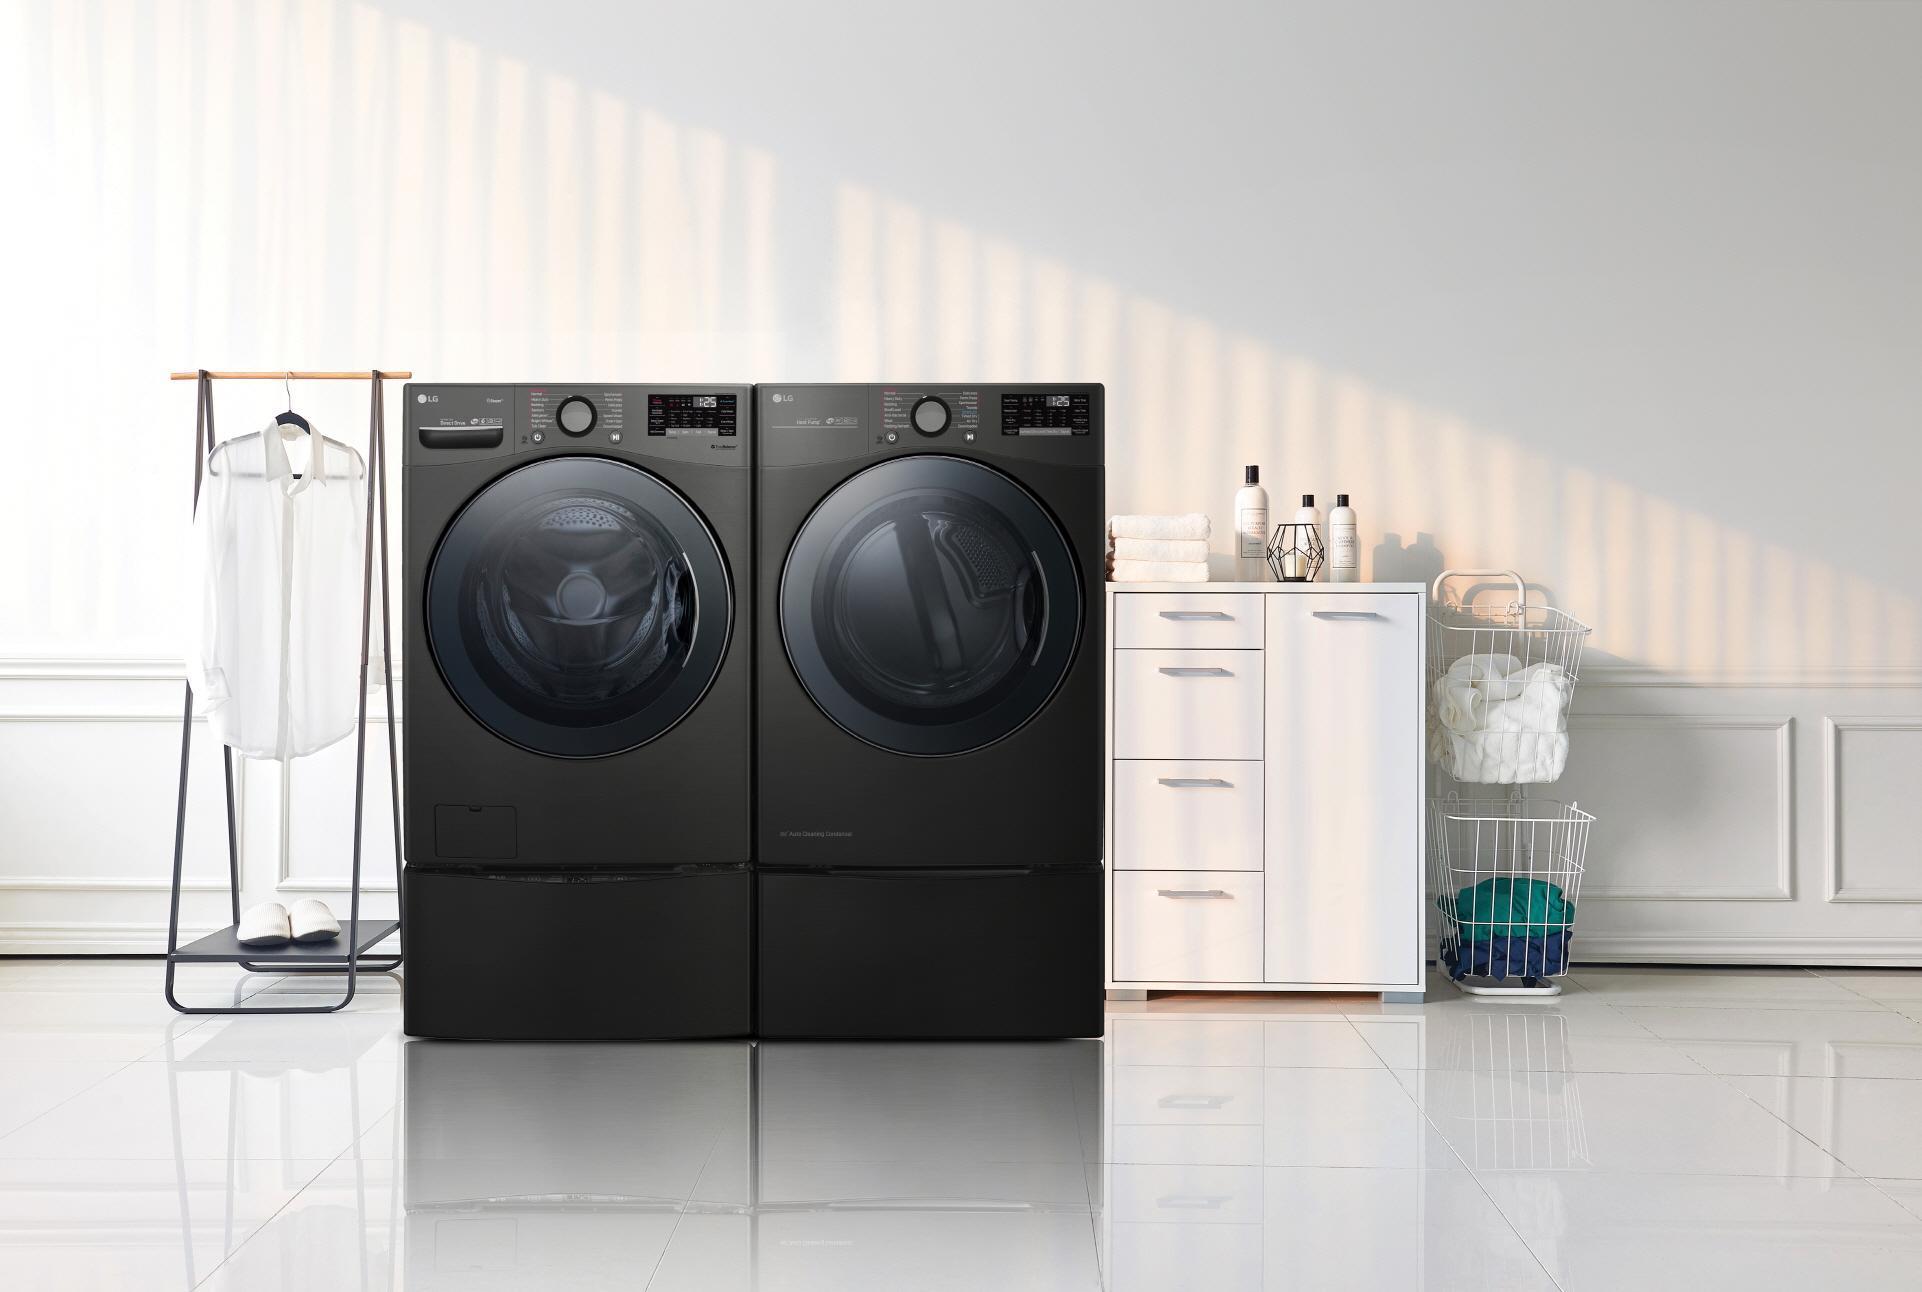 Máy giặt LG cửa trước có nhiều chức năng hiện đại